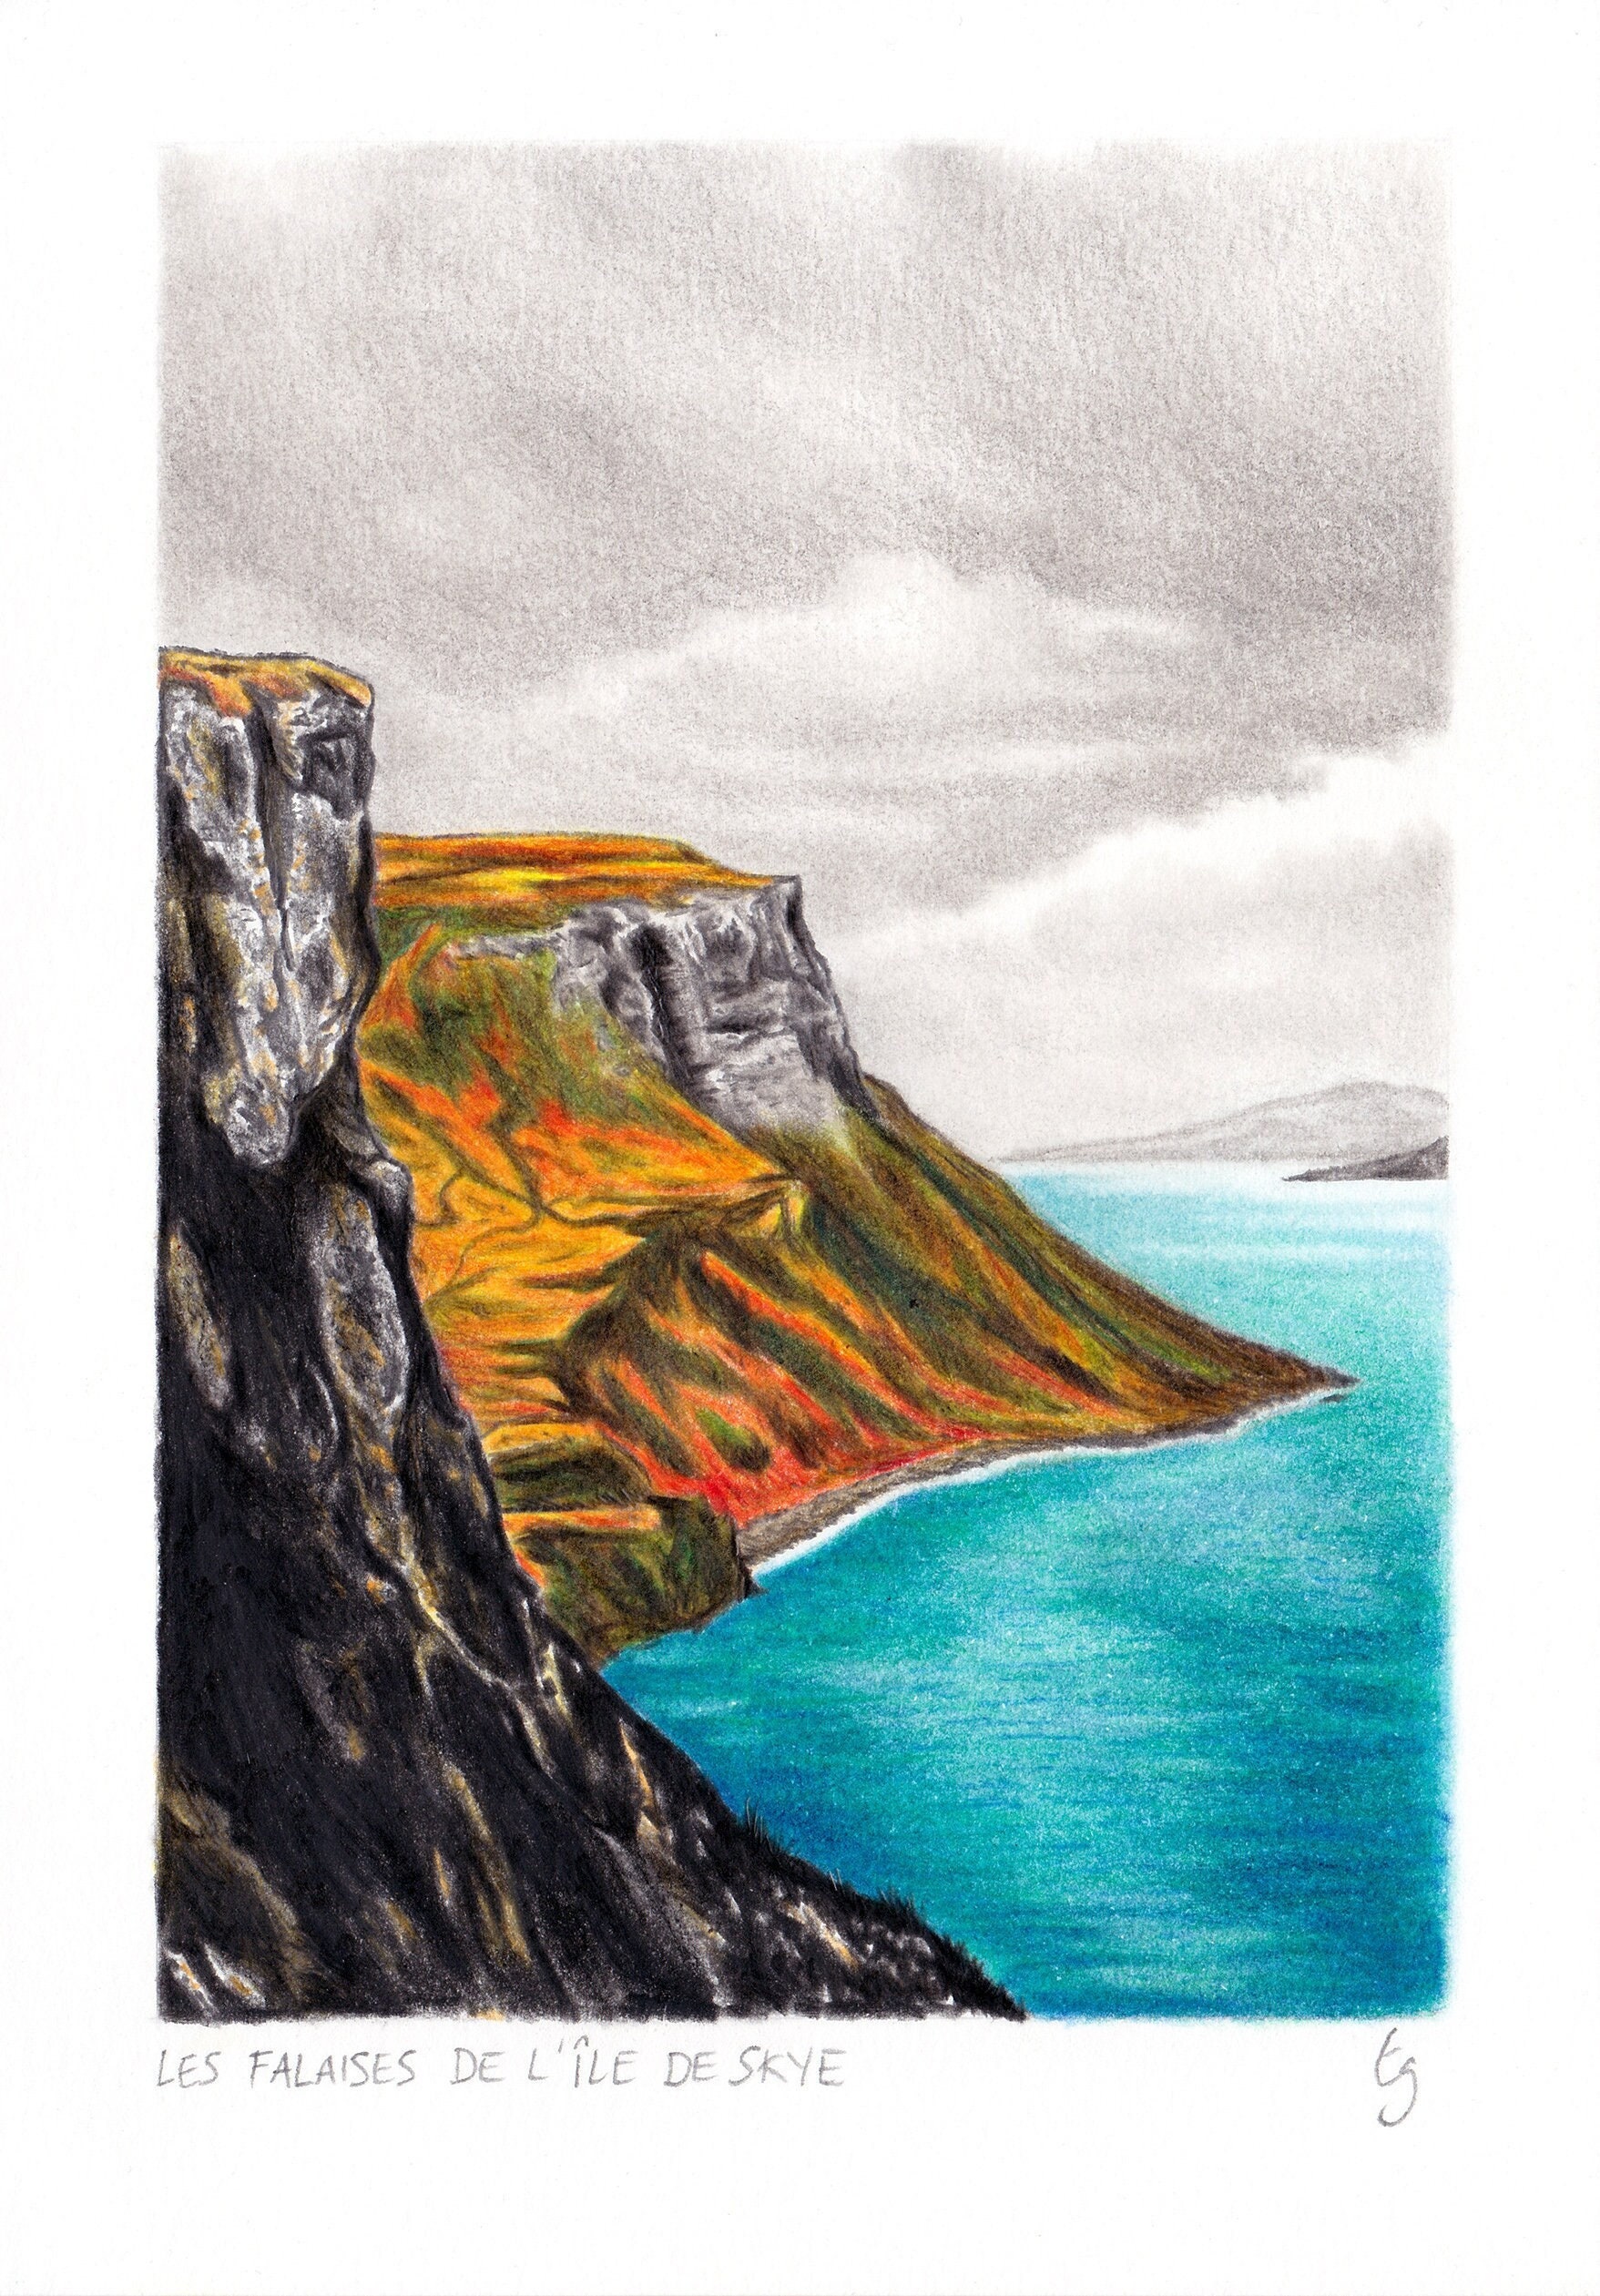 Dessin de falaises en Ecosse, illustration aux crayons de couleur, paysage  écossais sur l'île de Skye, bleu canard - Etsy France